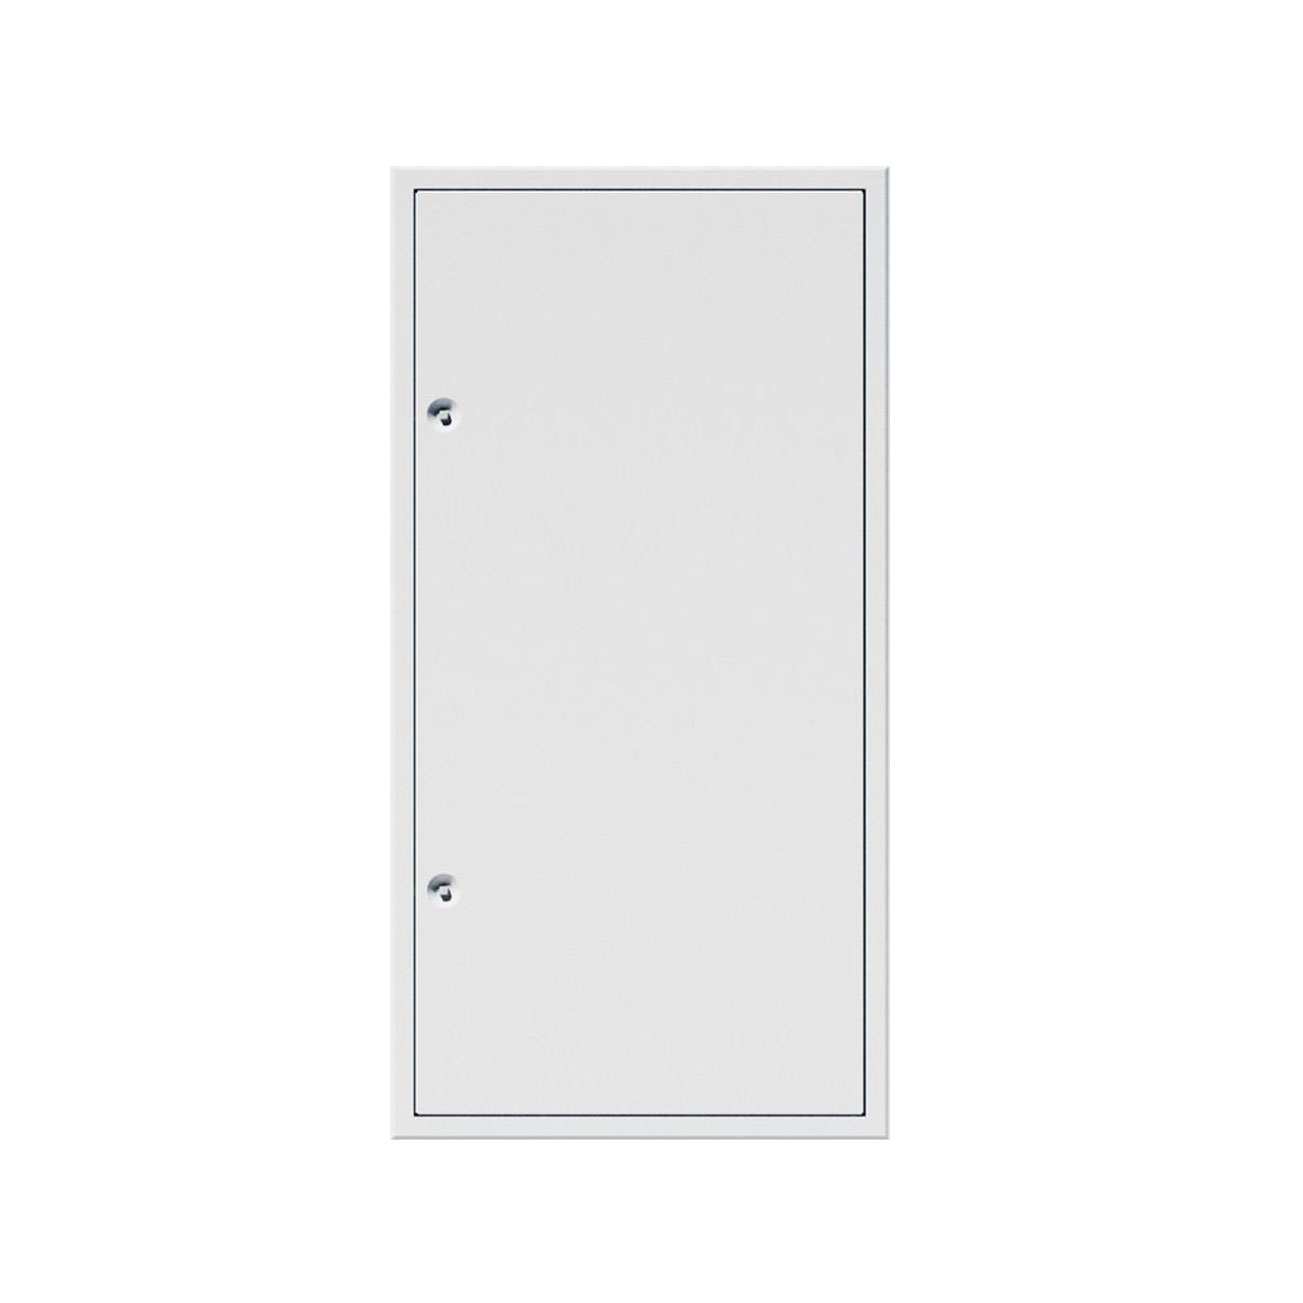 UPMANN Revisionstür Z-Profil PRIMUS Wand weiß 800x800 Vierkant